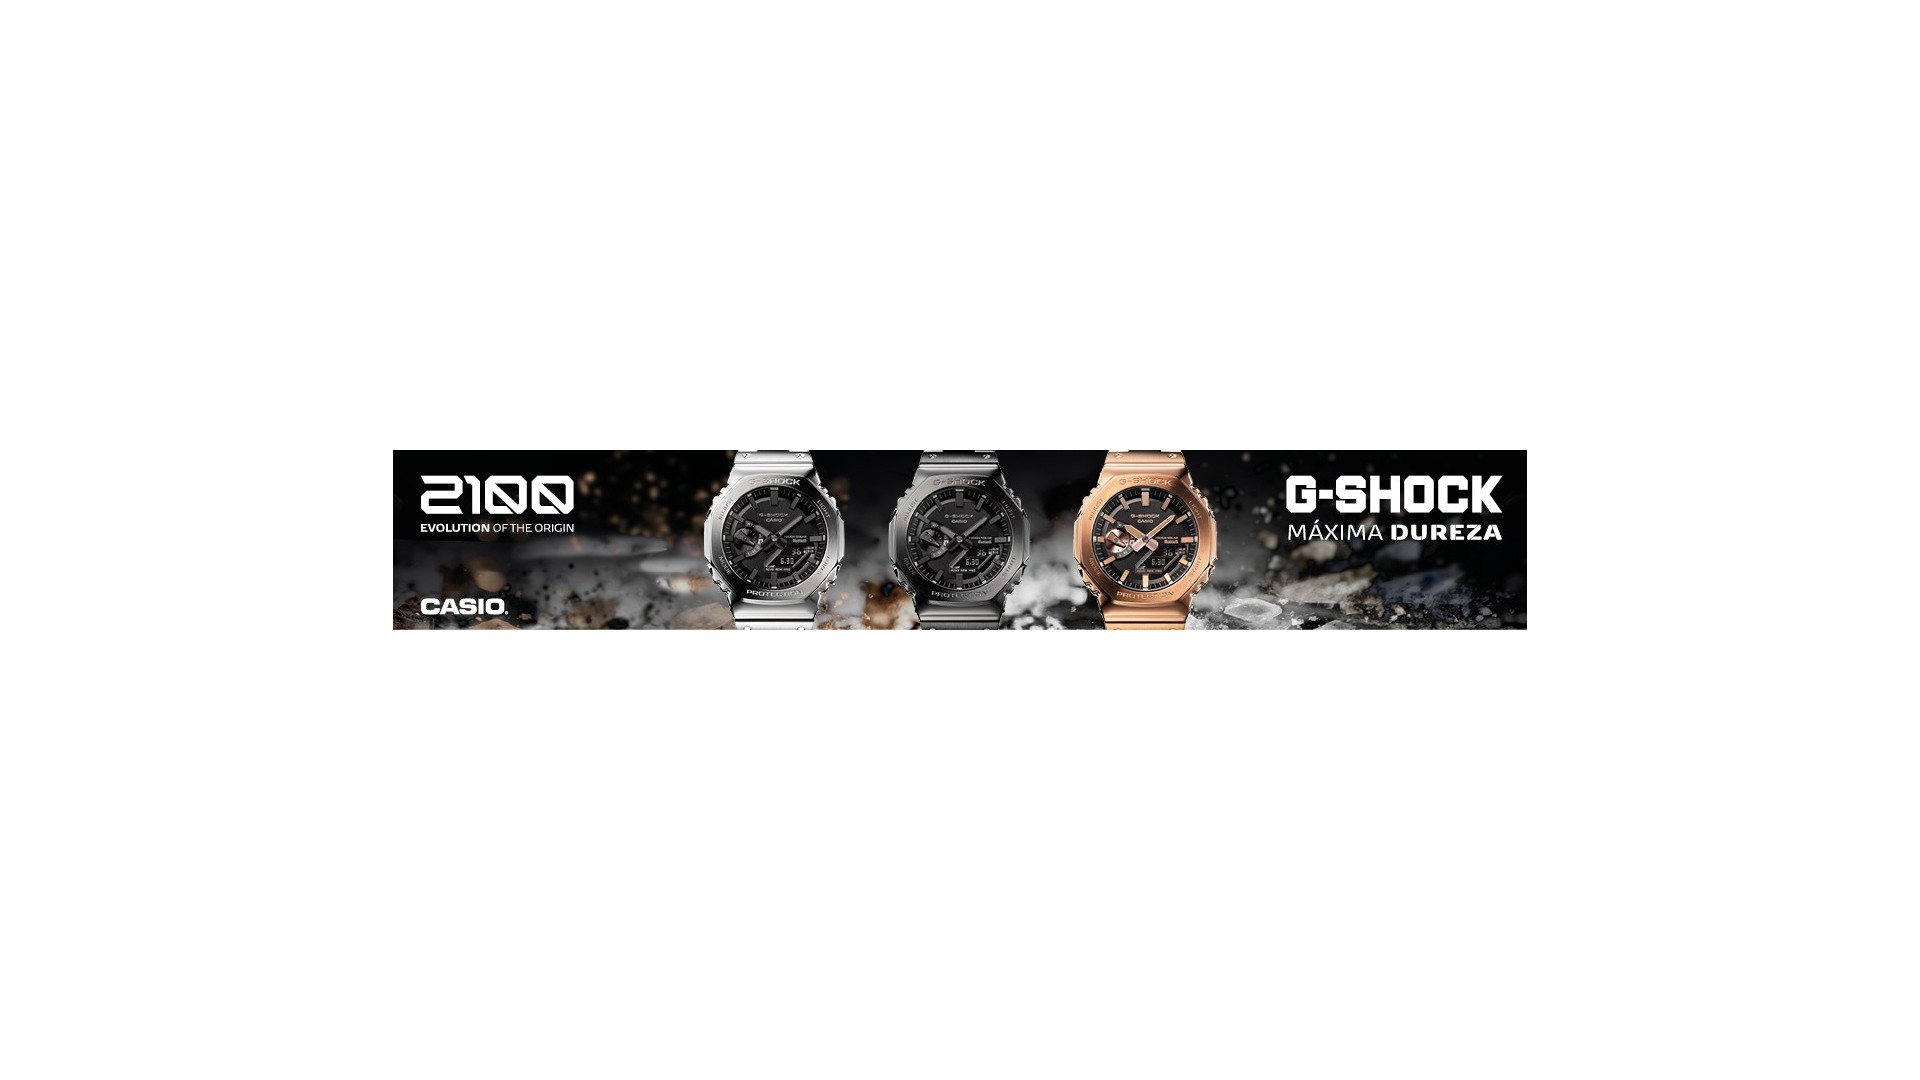 G-SHOCK GAMA PRO, gama de relojes más Premium, elegantes, sofisticados, resistentes y con la tecnología más precisa.